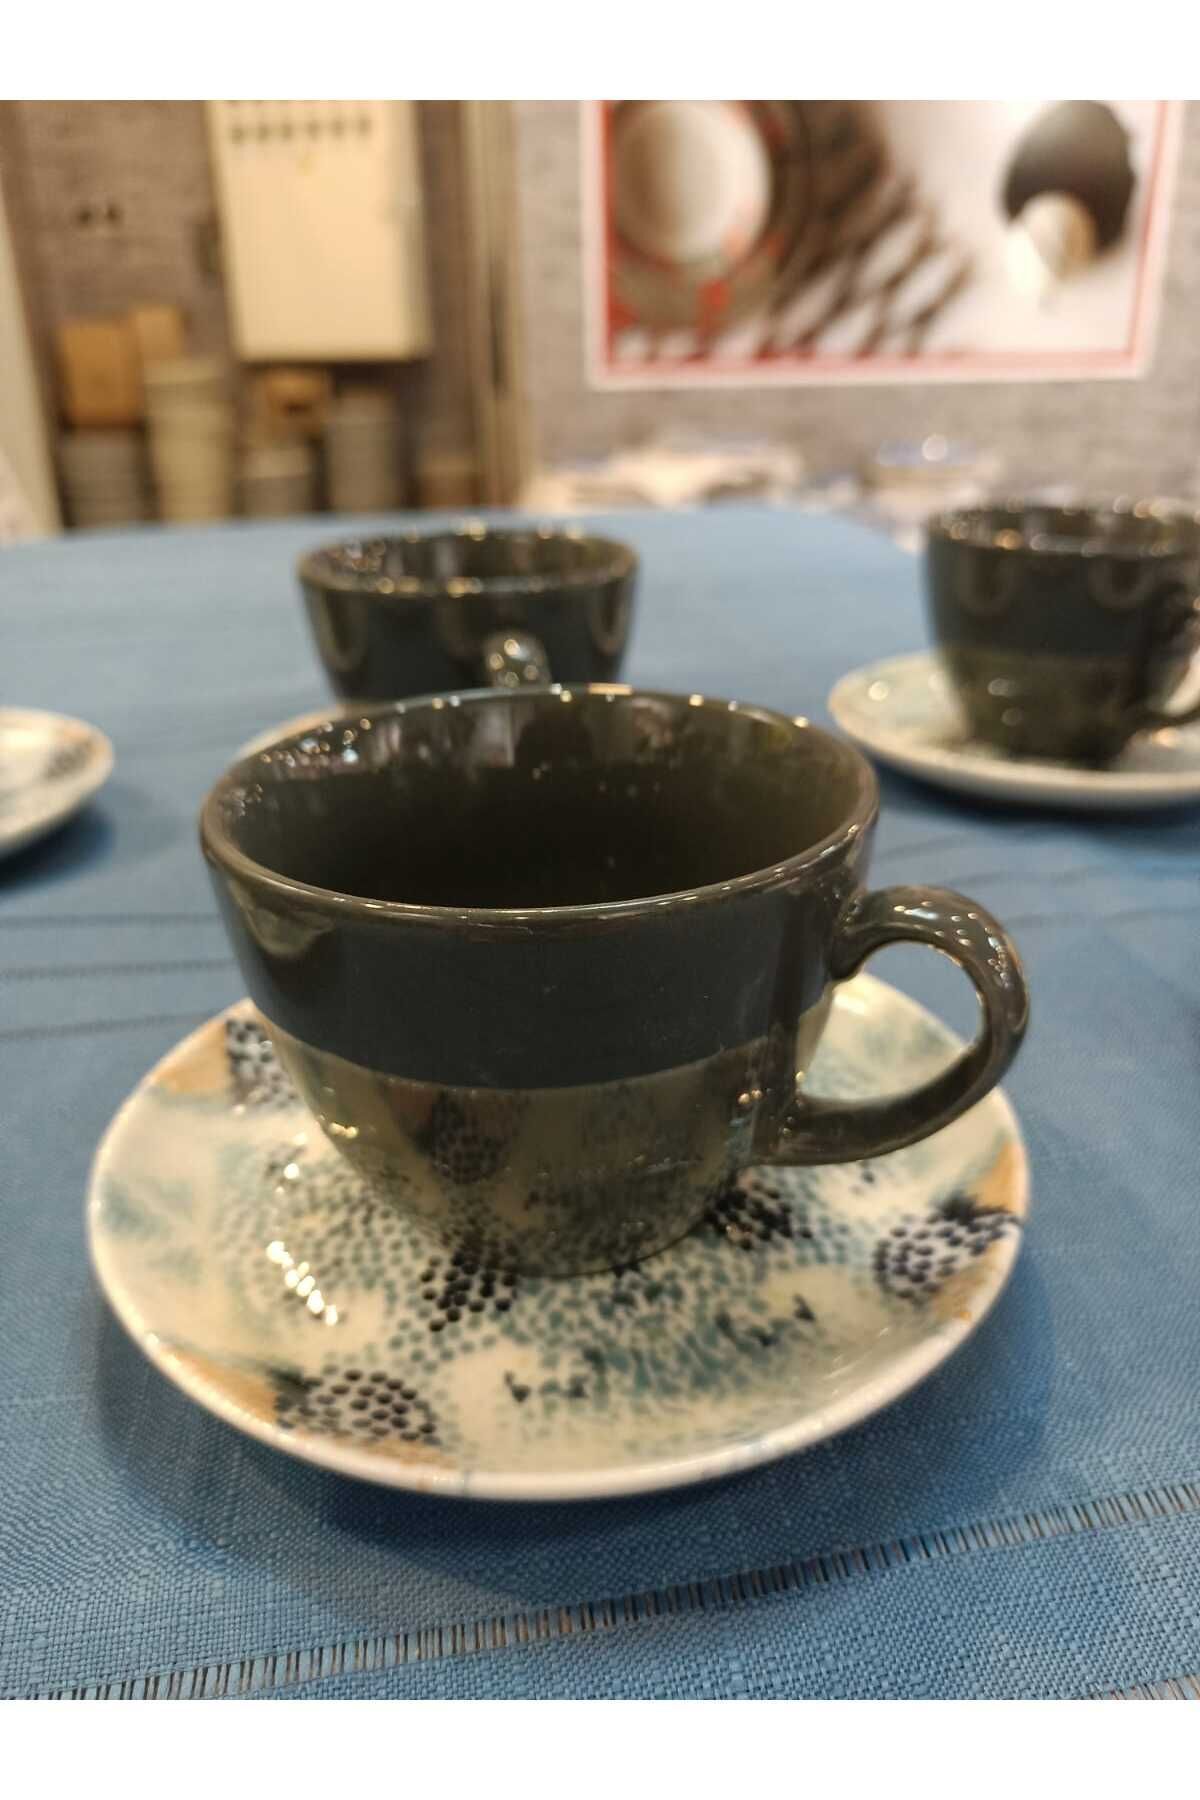 Tulü Porselen 6 kişilik porselen çay fincan takımı